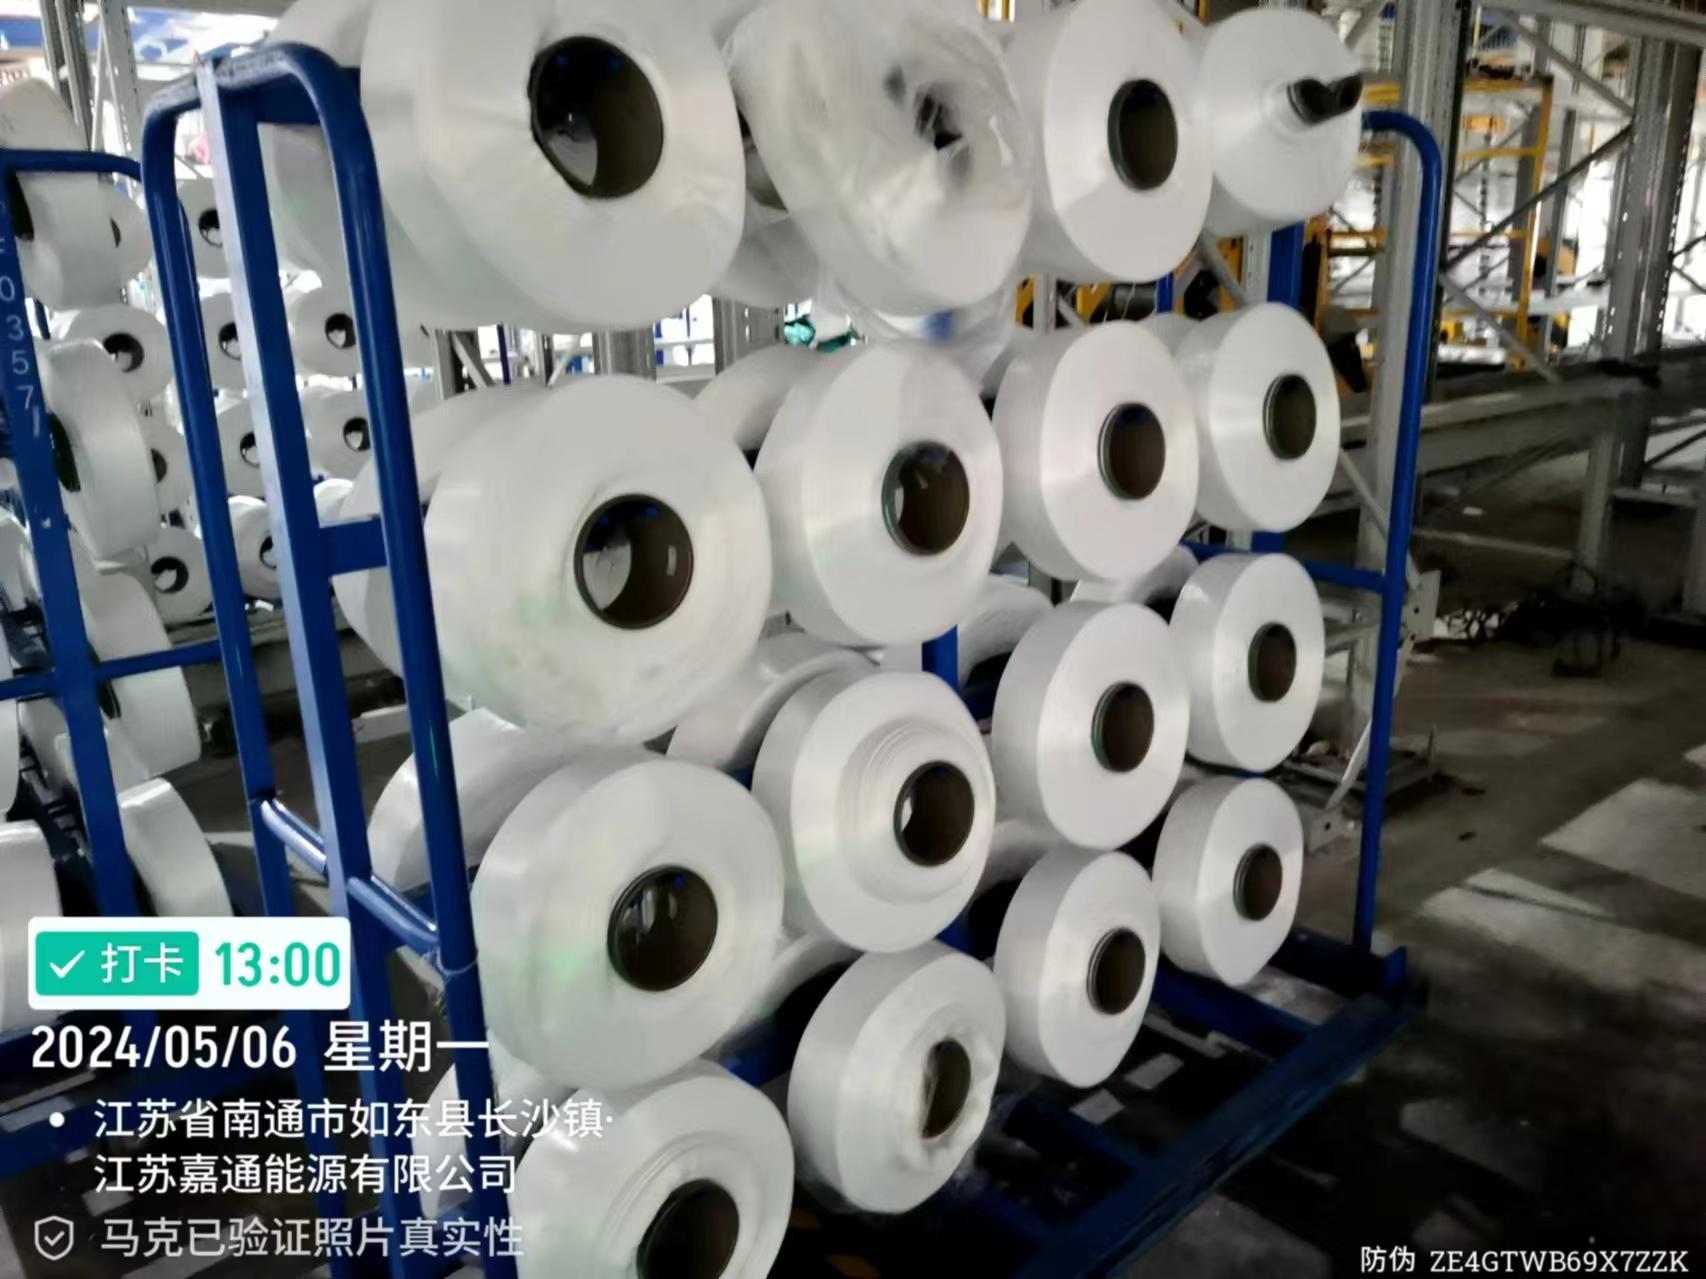 19.44吨化纤丝拍卖公告